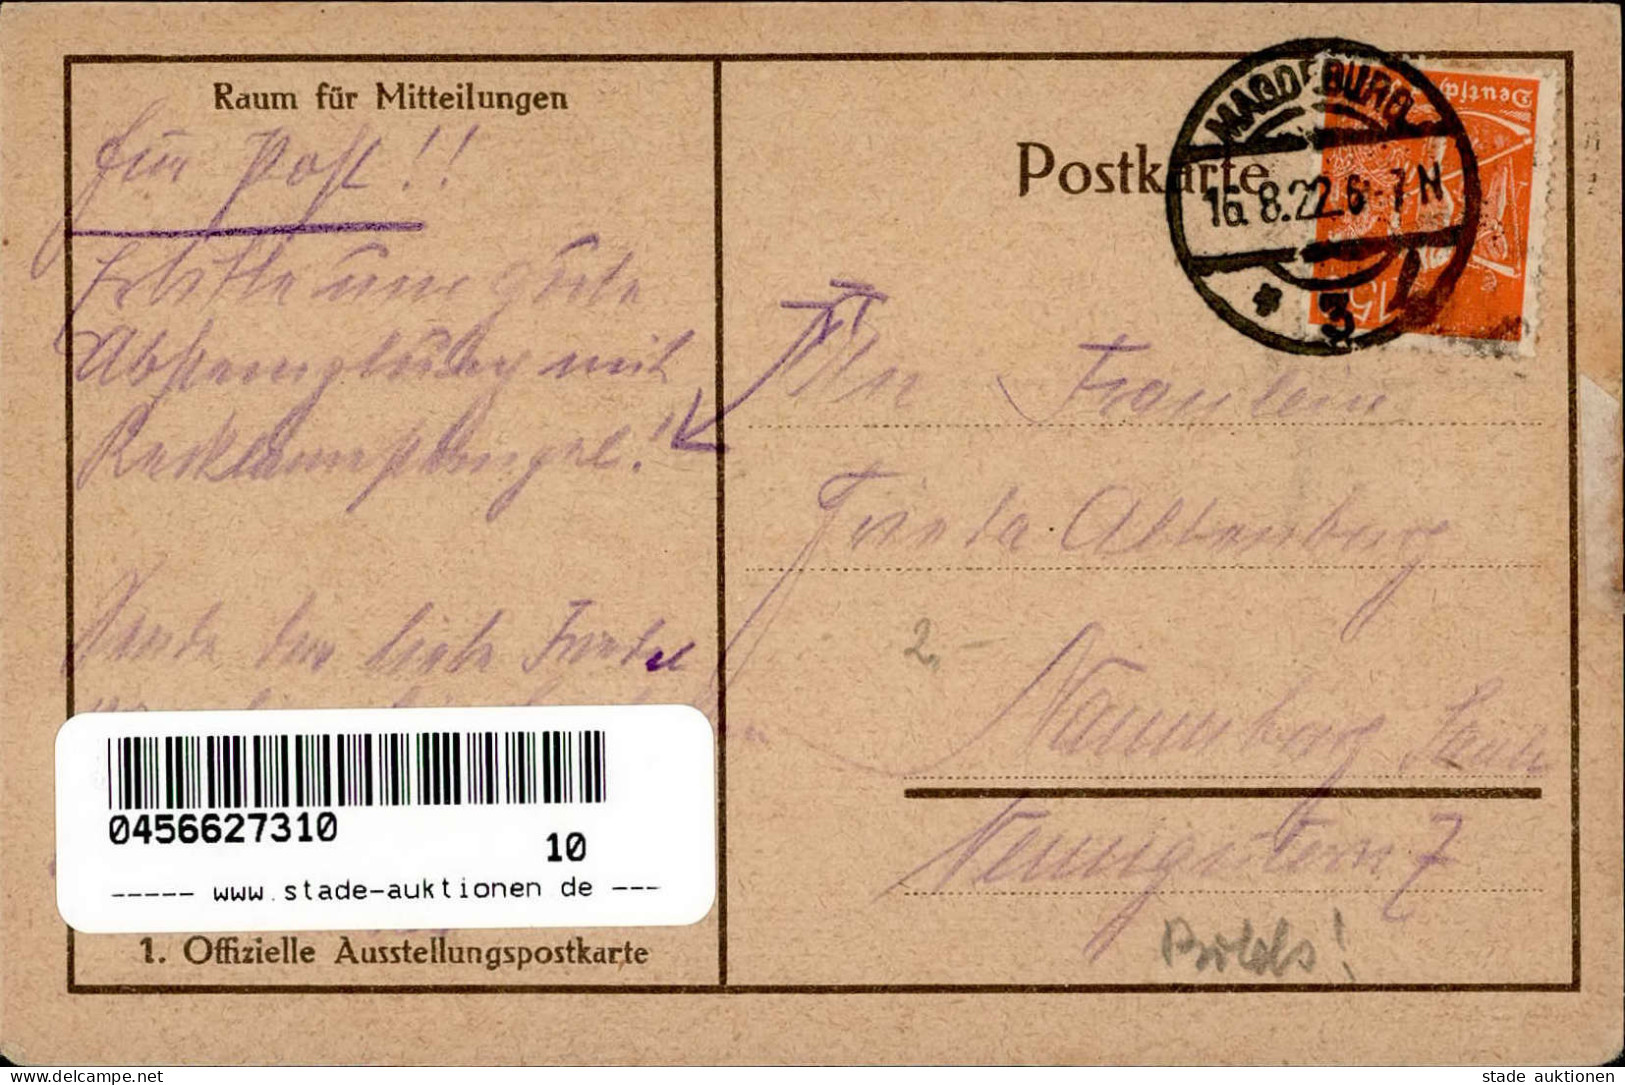 MAGDEBURG - MIAMA AUSSTELLUNG Des WIEDERAUFBAUS 1922 Dekorative Ausstellungskünstlerkarte Sign. Alw. FREUND BELIANI I-II - Ausstellungen